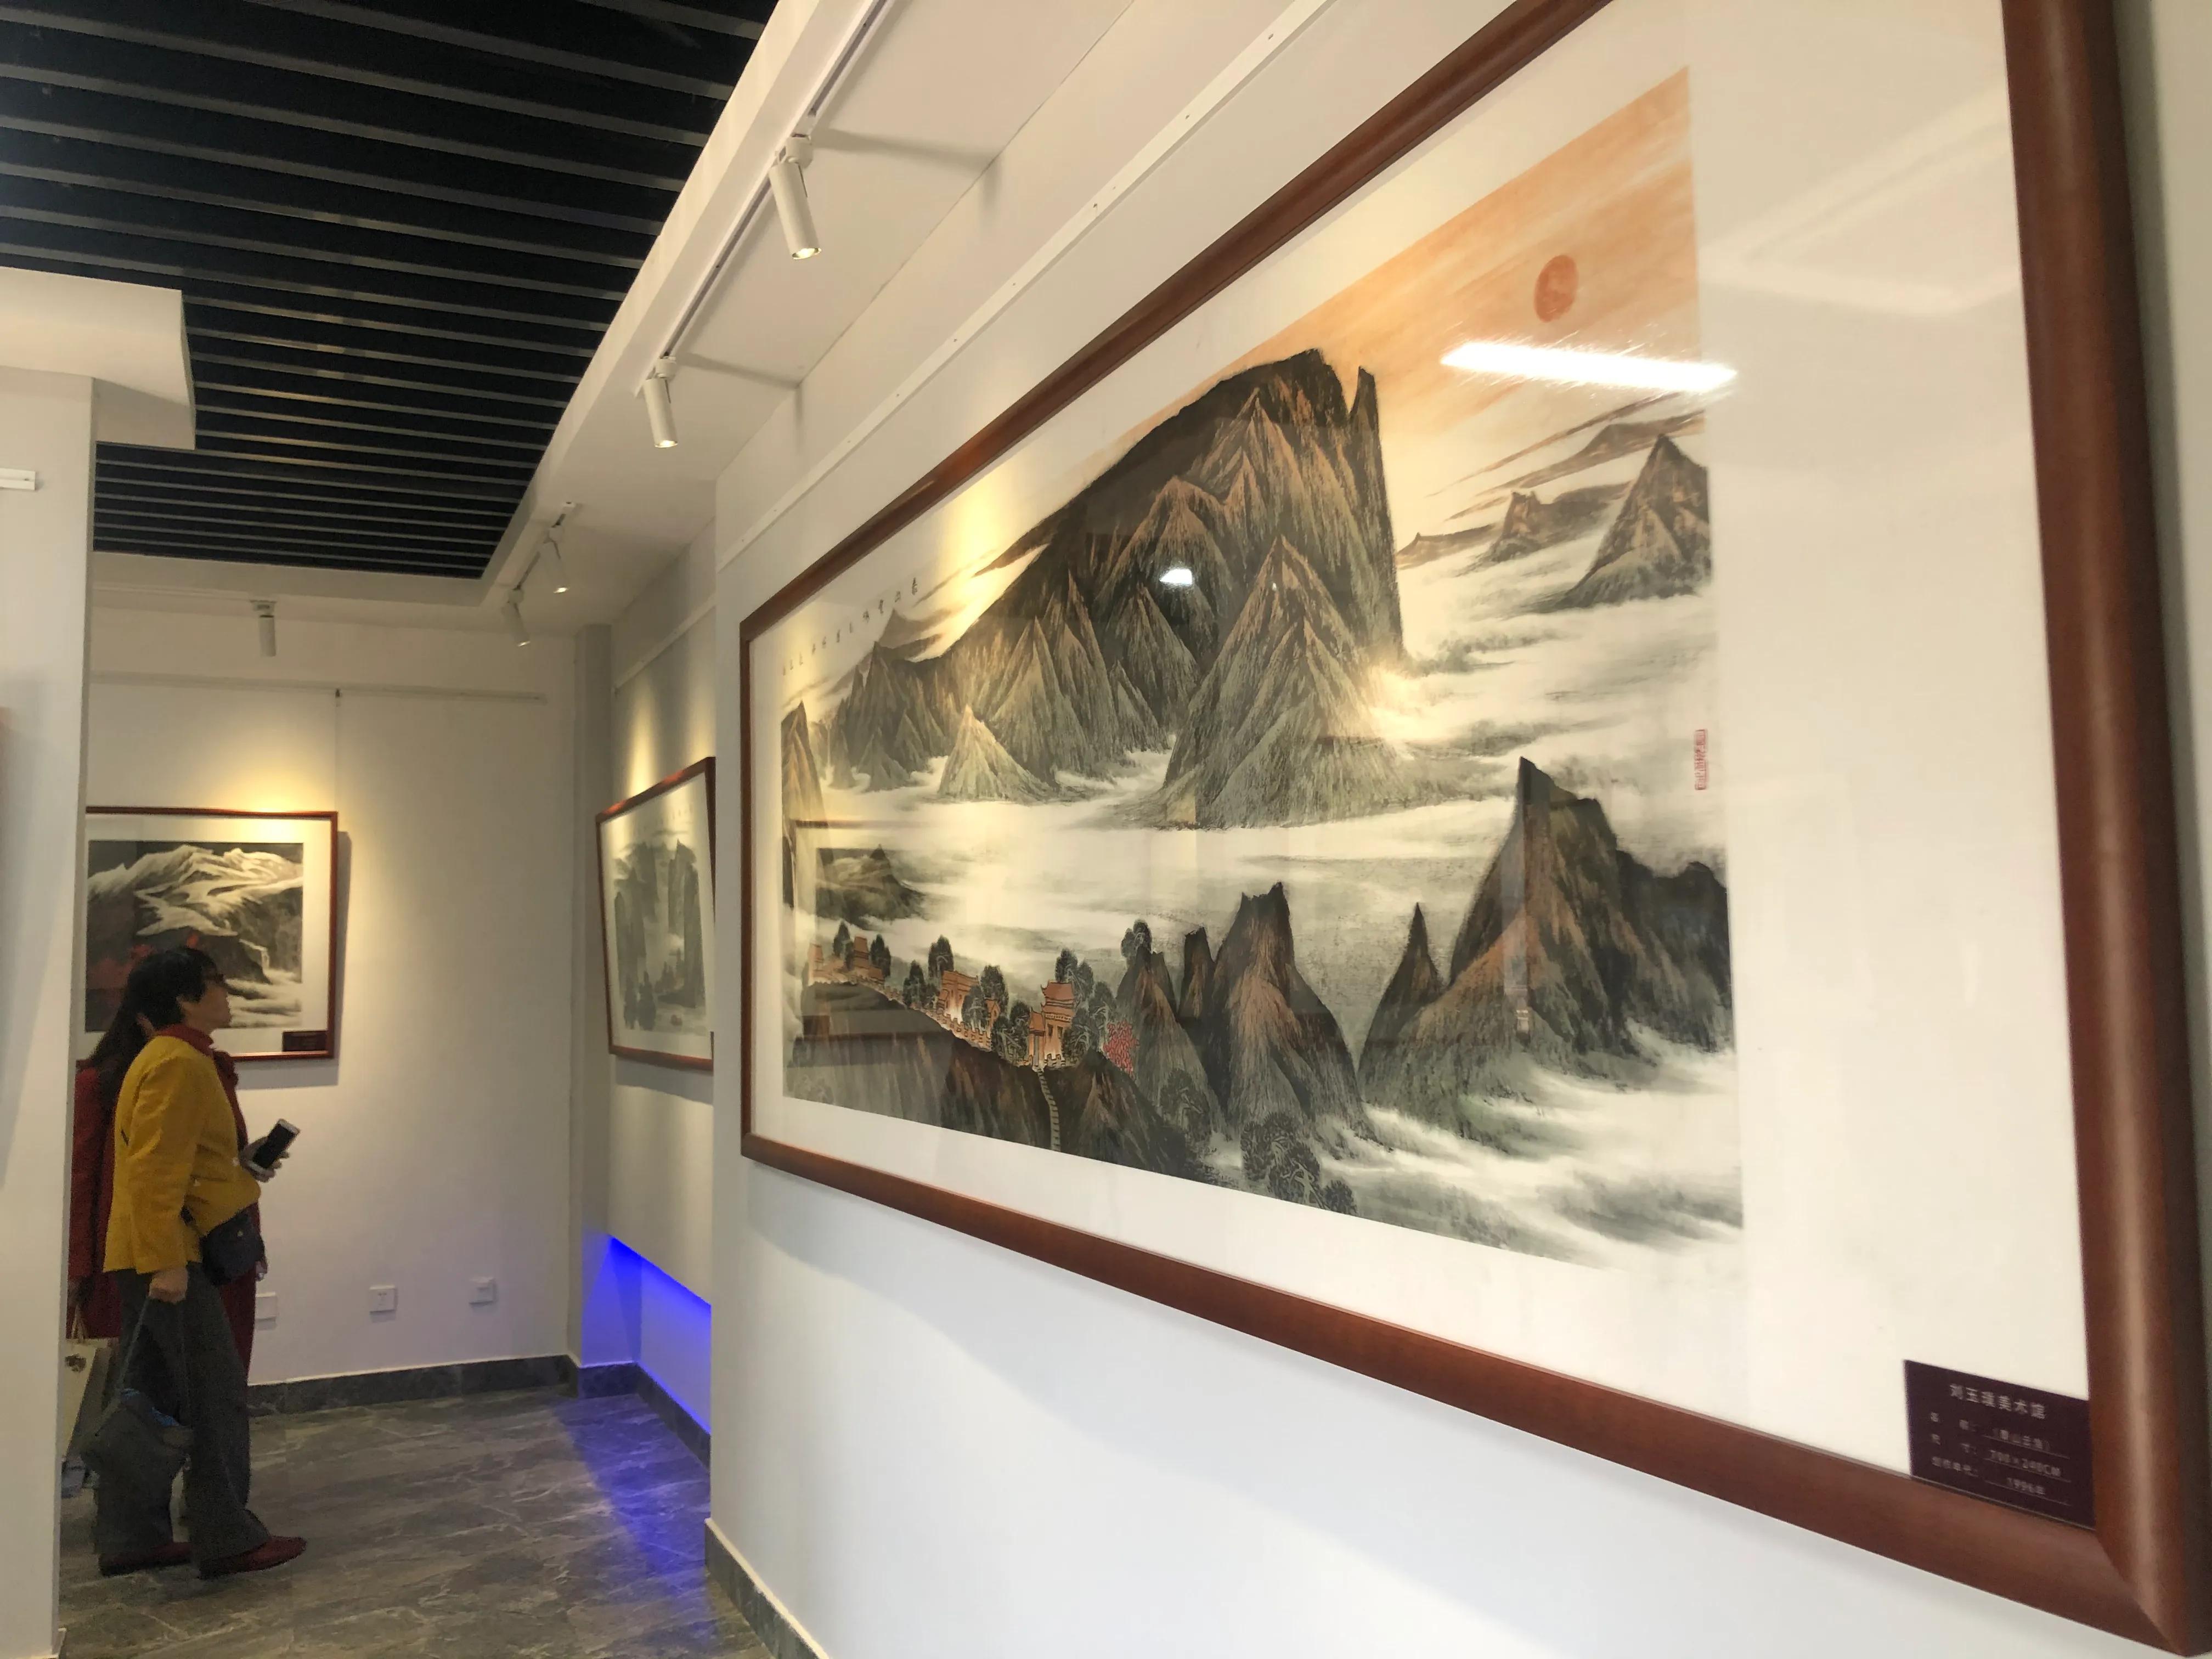 著名画家刘玉璞美术馆碧瓦朱檐落聊城， 展出其不同时期杰作近百幅